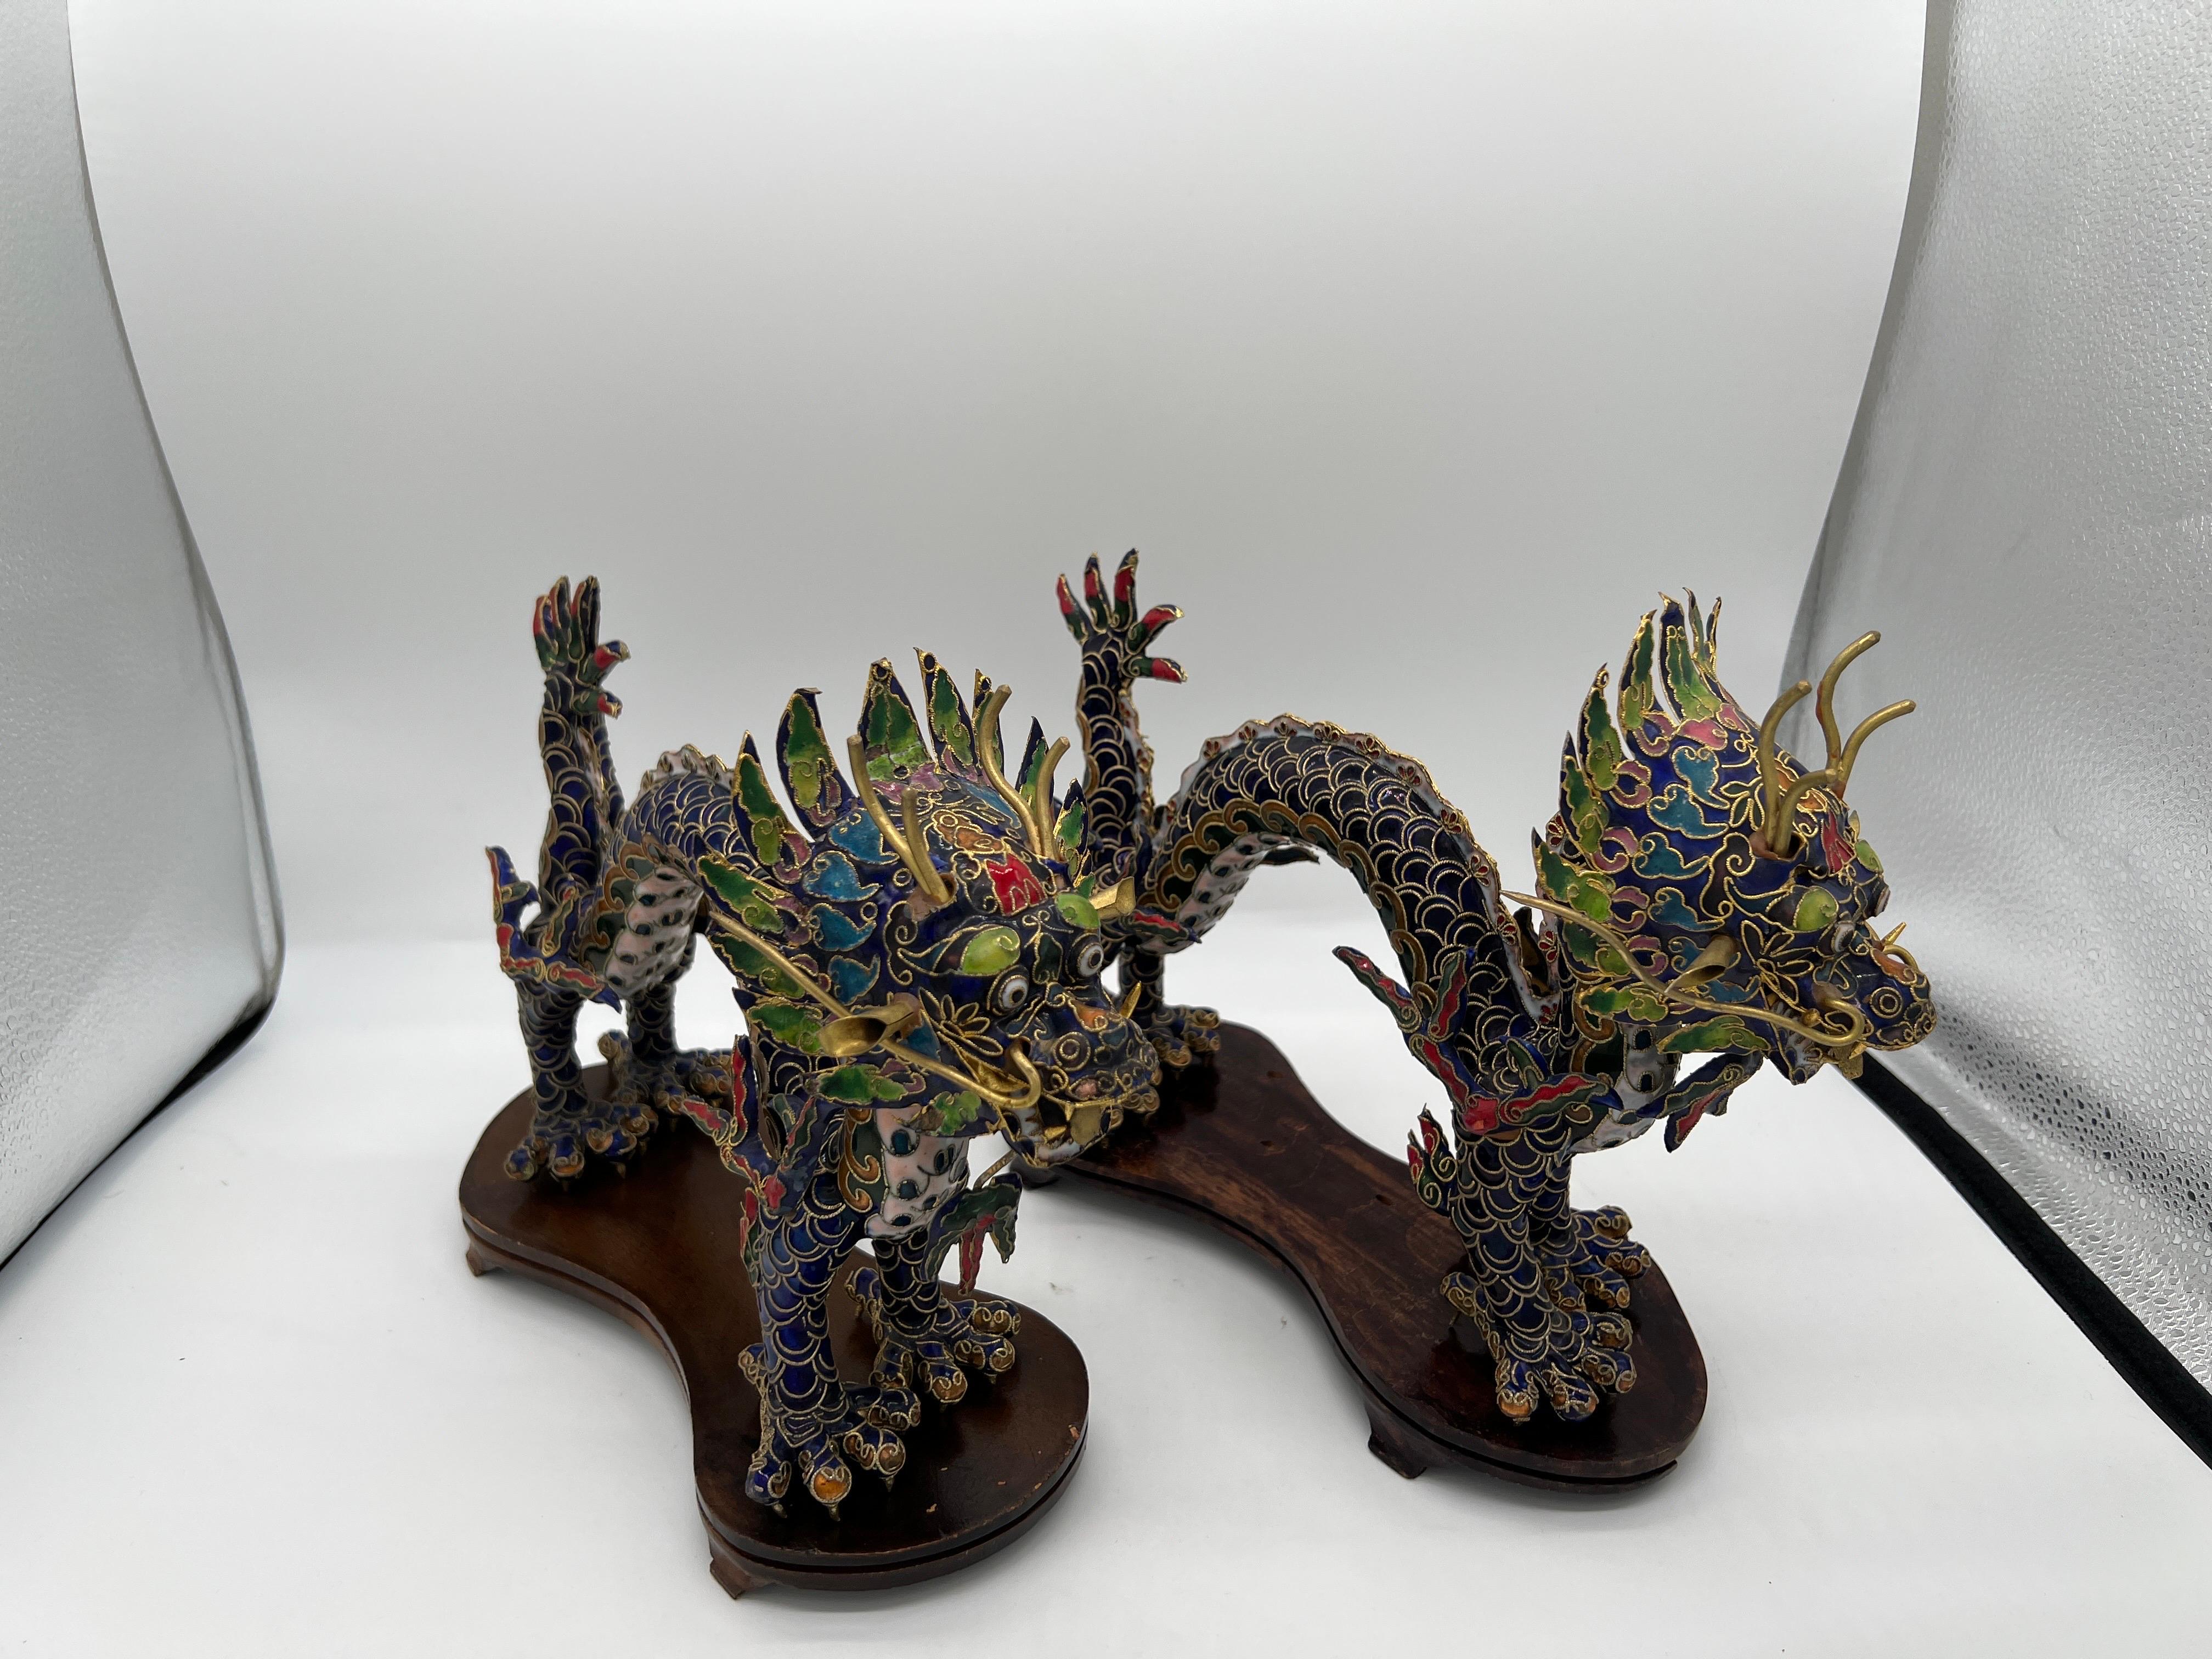 Chinois, 20e siècle.

Paire de figurines de dragon en cloisonné de style export chinois sur socle. Chaque dragon est détaillé avec des fils de laiton et des émaux décorés à la main sur les surfaces. Les dragons chinois sont souvent un signe de